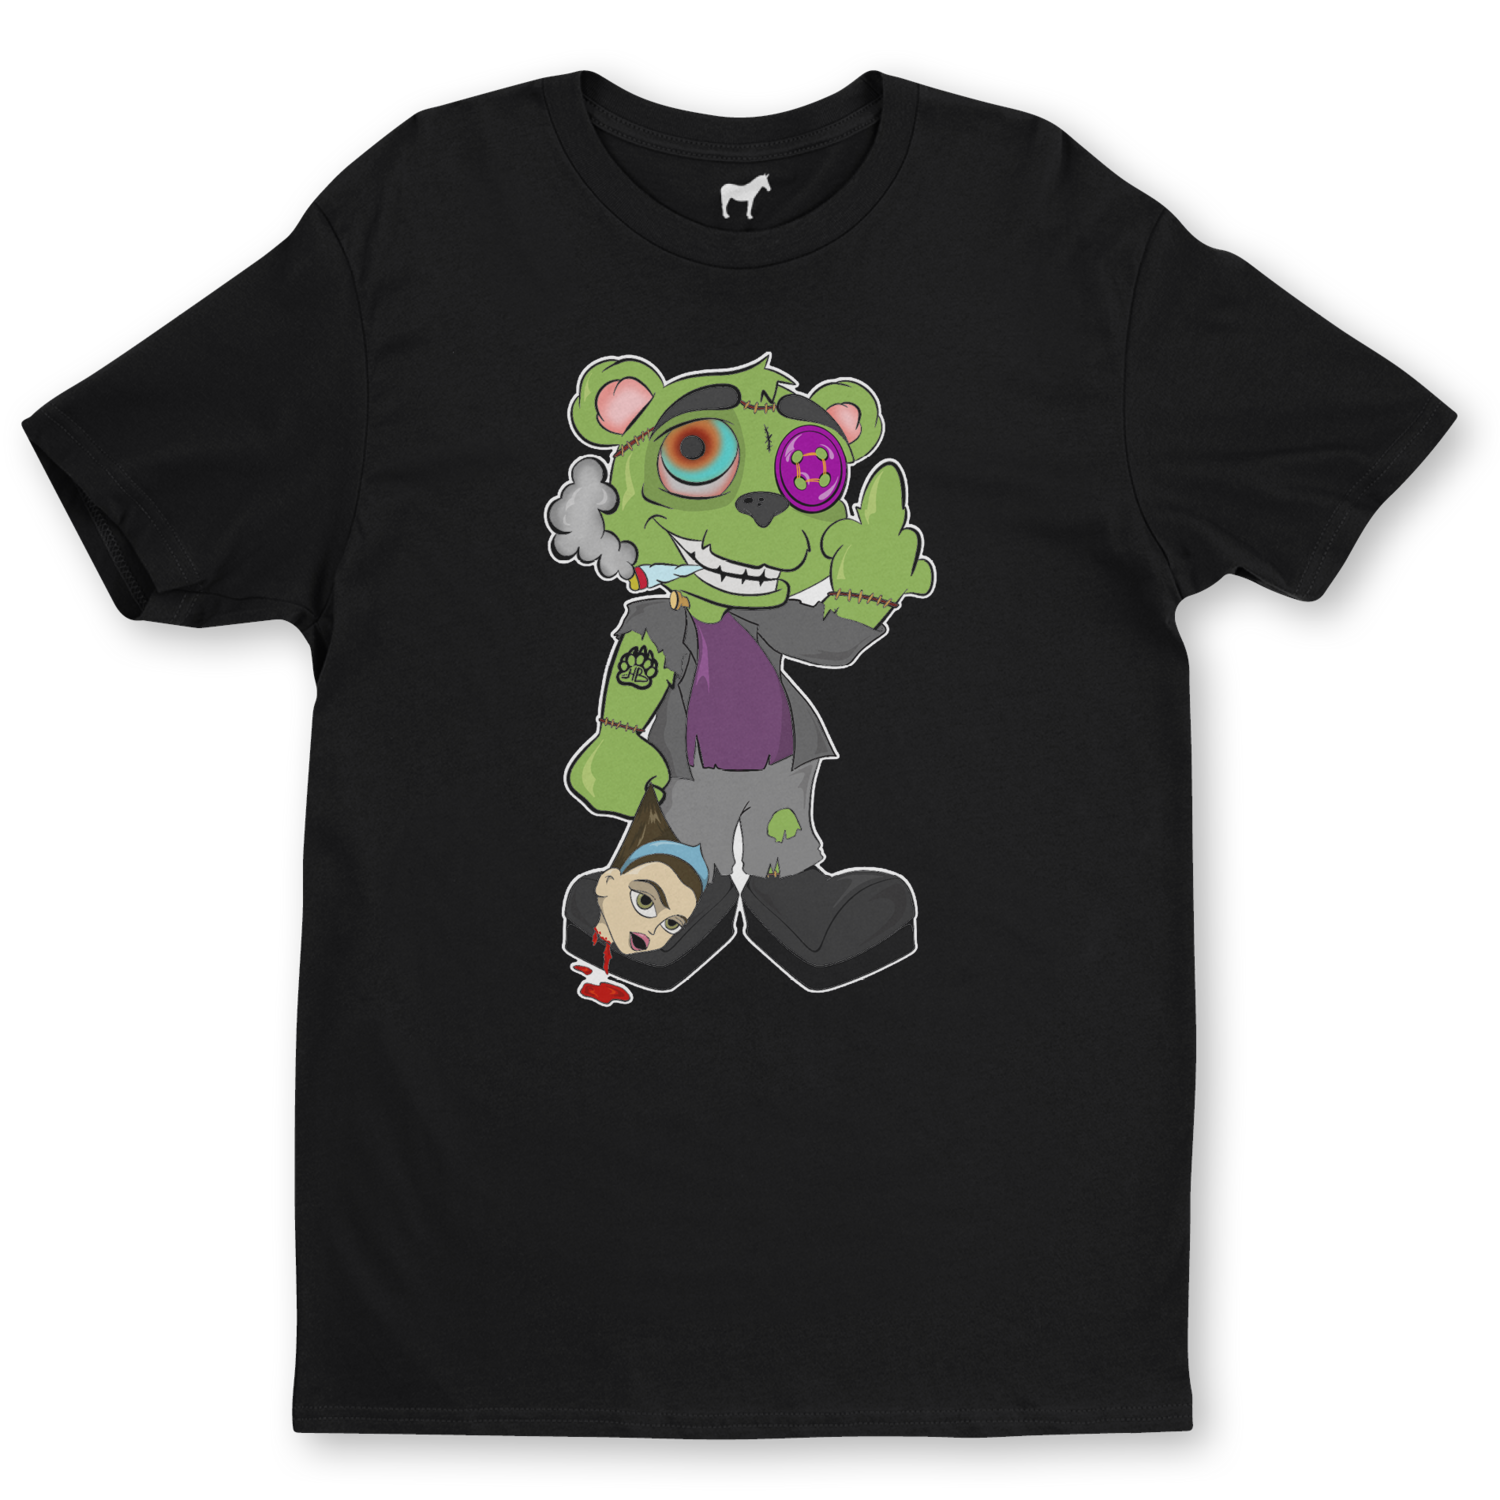 Frankenstein Wonky™ Limited Edition